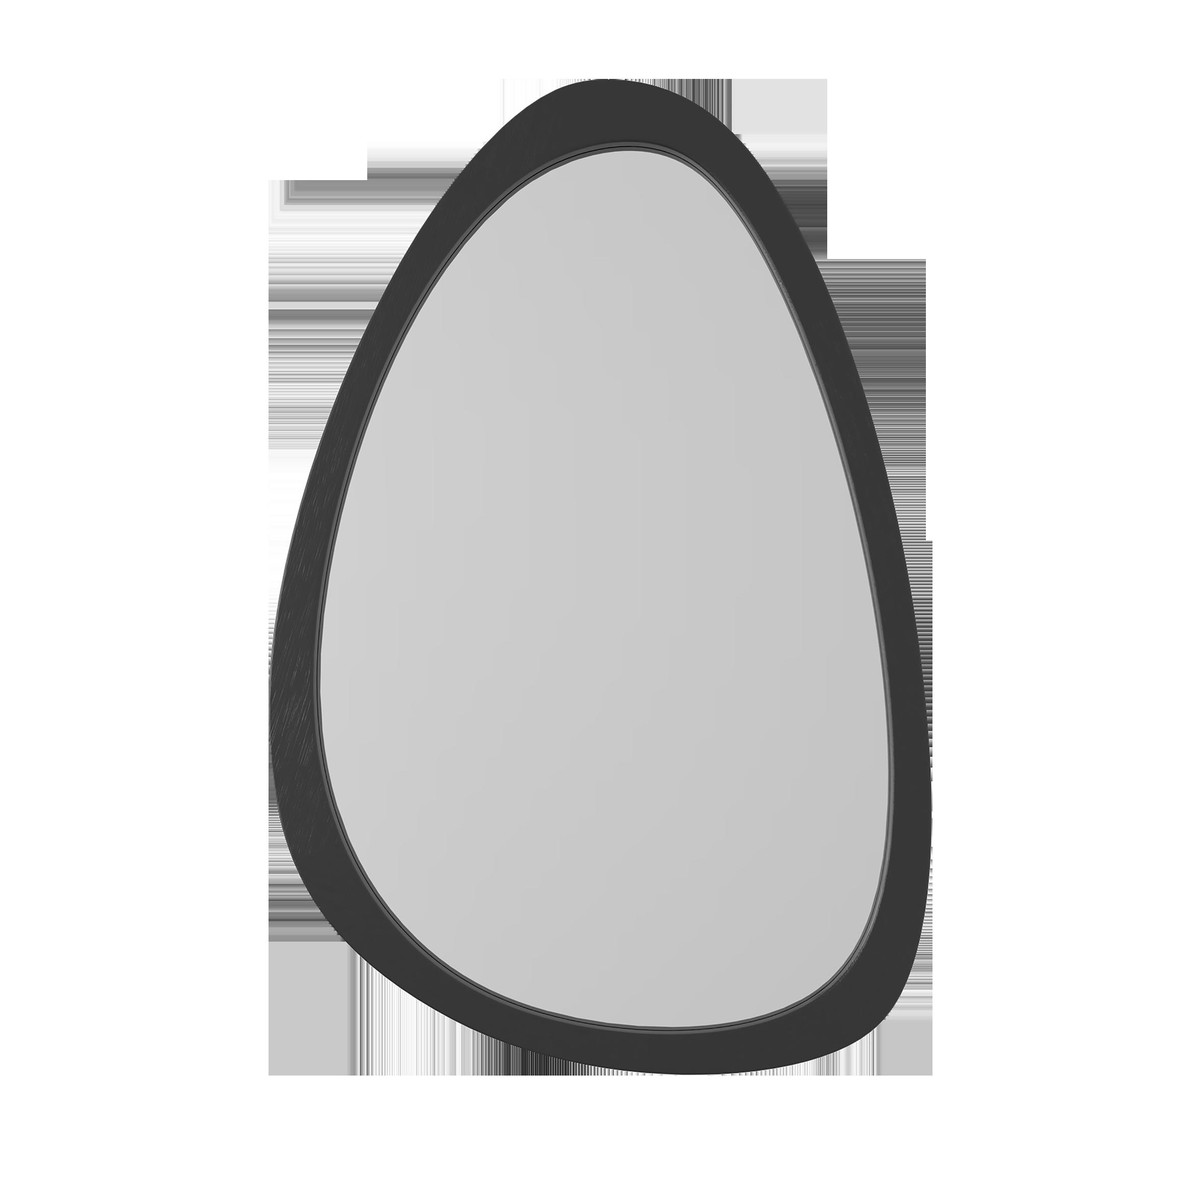   Miroir organique bois noir 40x60cm  40x60cm